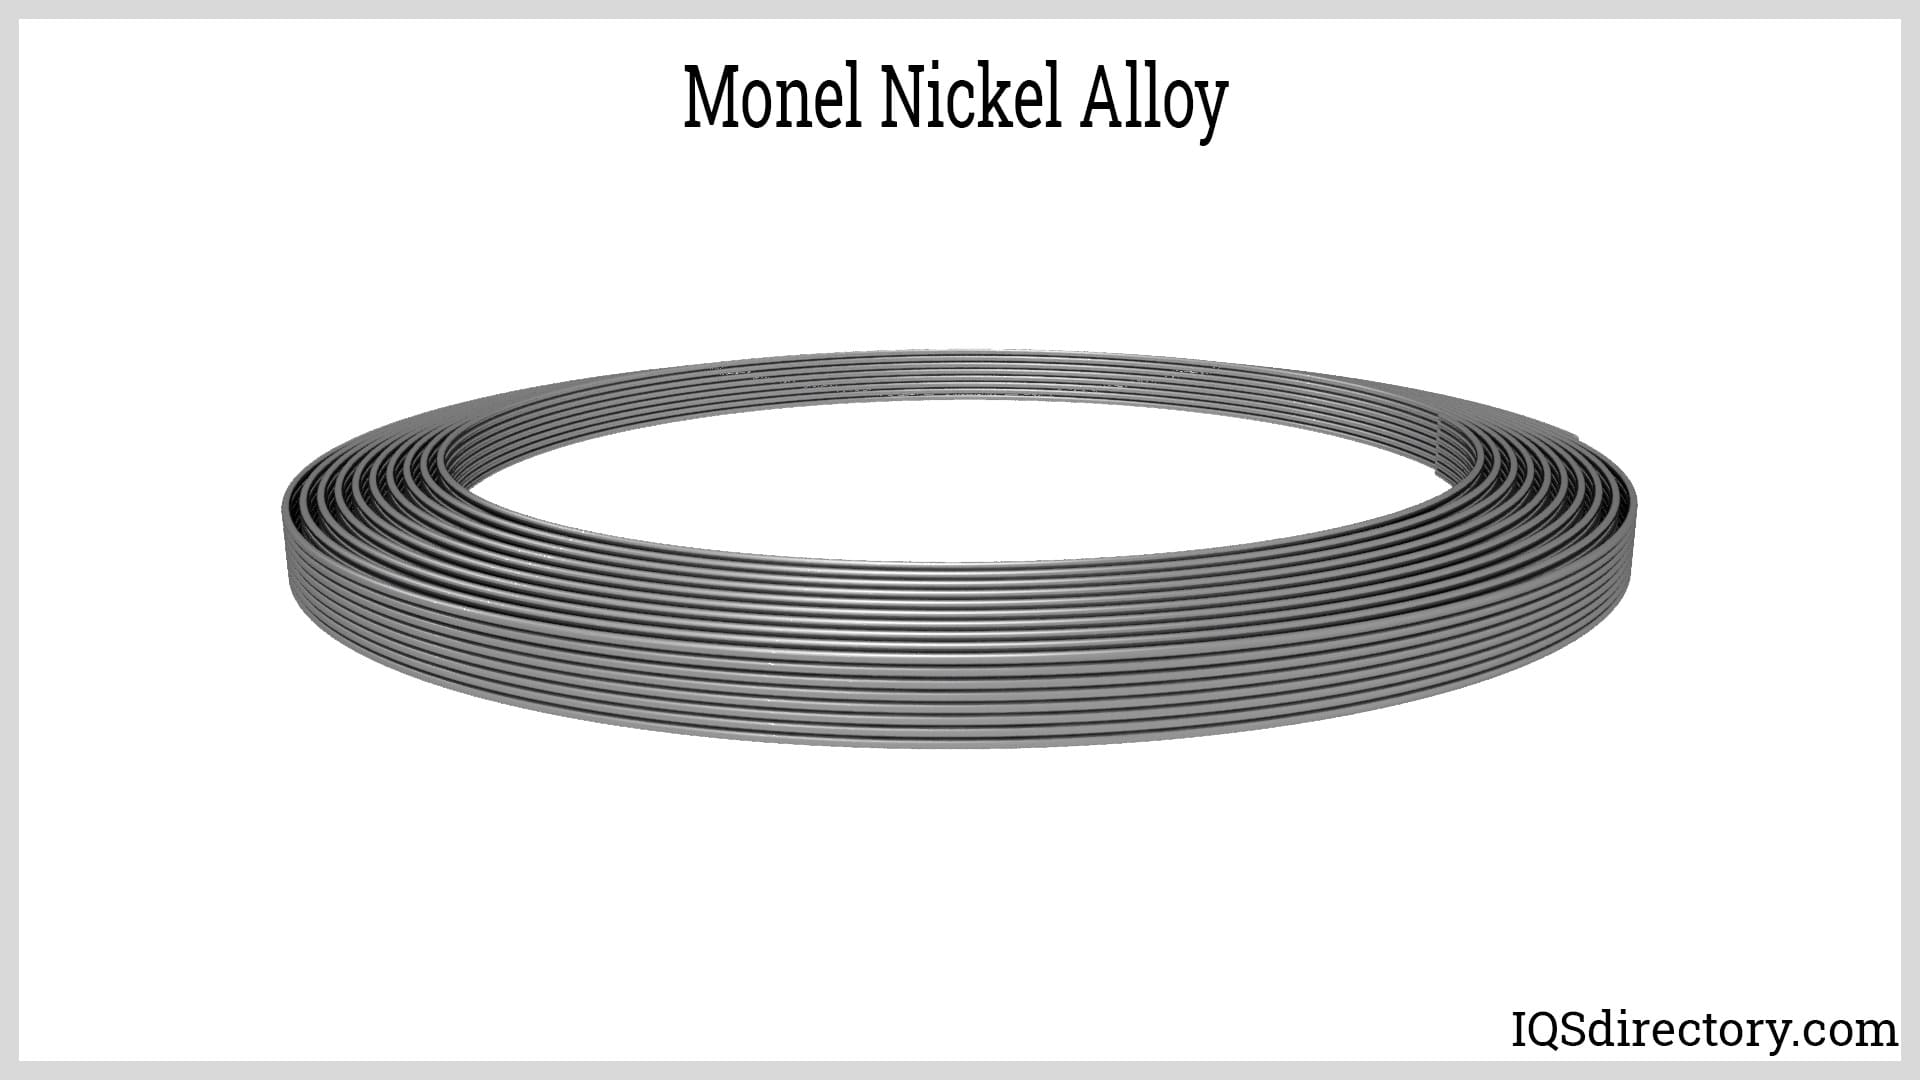 Monel Nickel Alloy